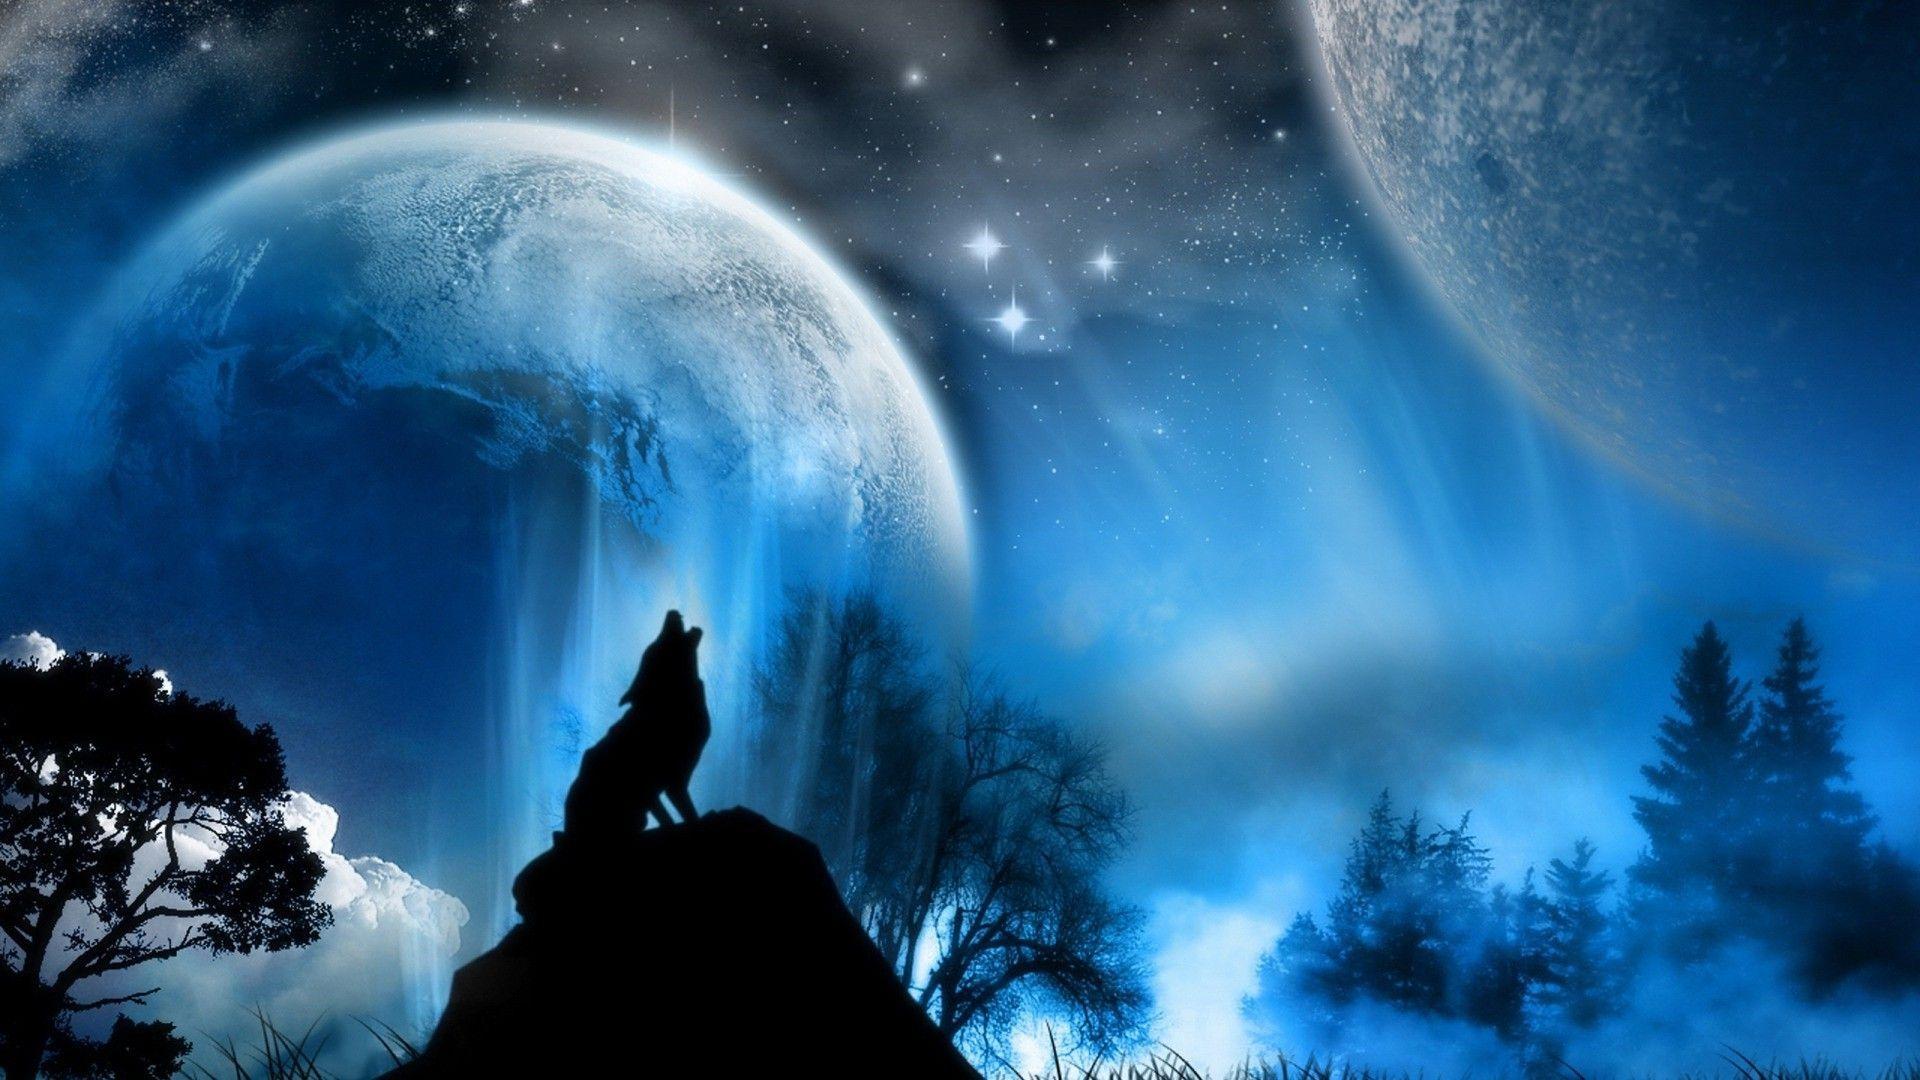 crescent moon wallpaper wolf